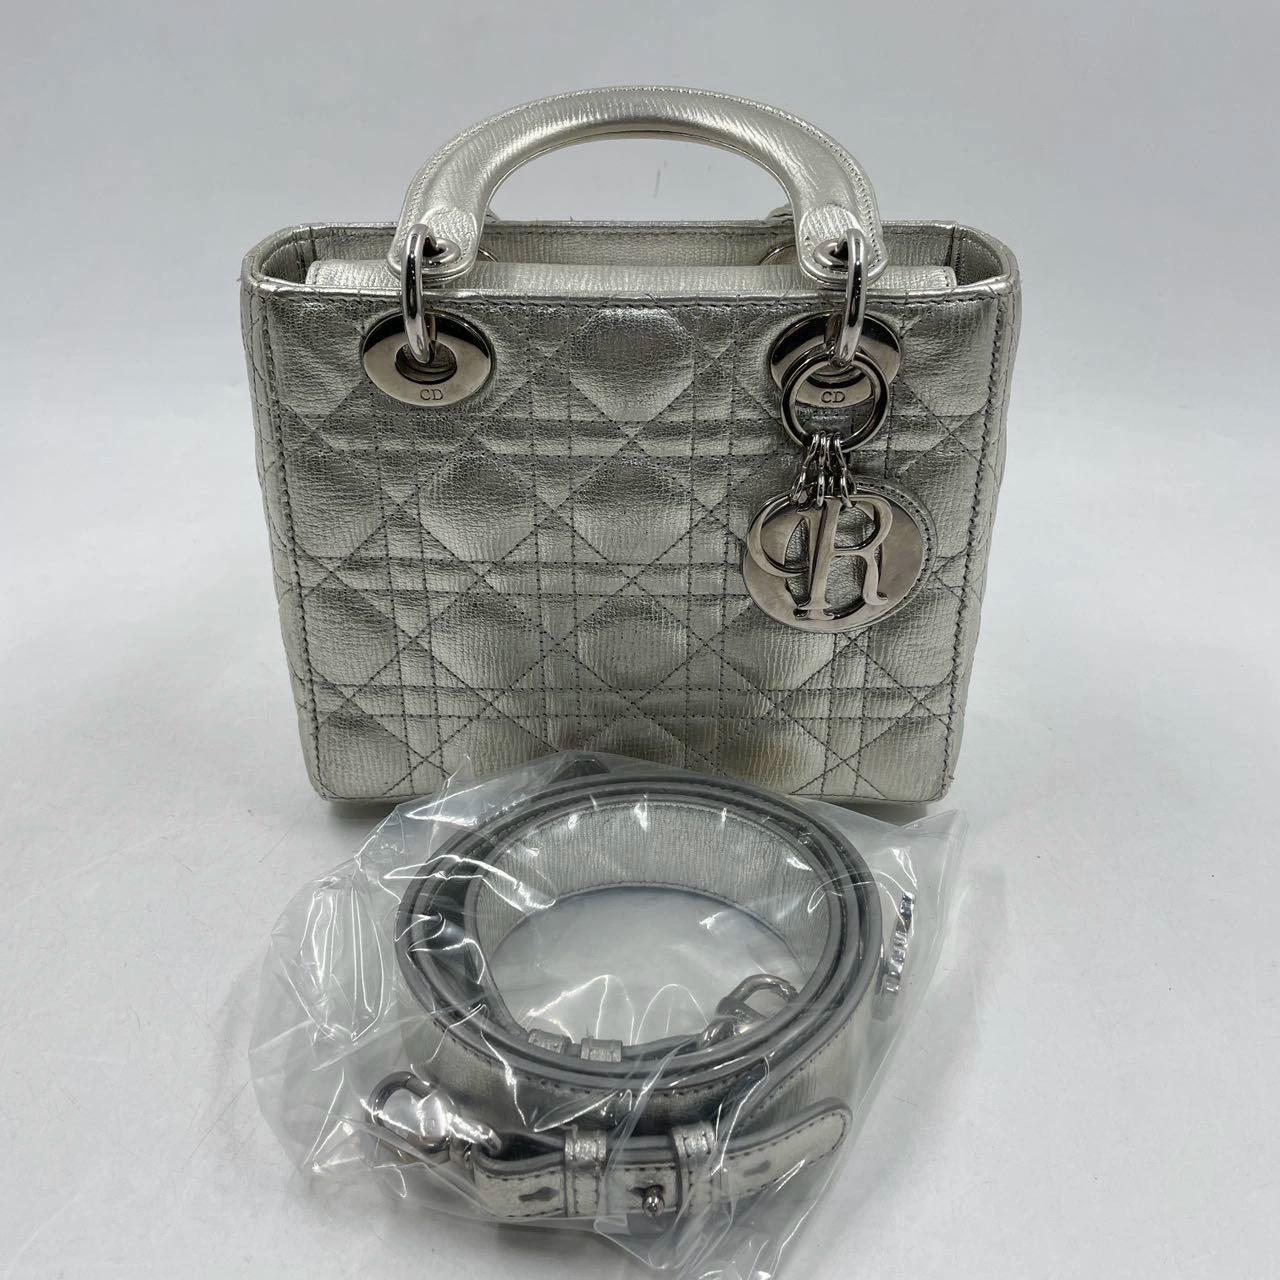 Wir stellen Ihnen die Lady Dior ABCdior Small Silver Cannage Lammfell Handtasche vor. Mit ihrem ABCdior my lady dior Design, der Farbe Space Silver und dem Nietenarmband ist sie der Inbegriff von Eleganz. Die coole Farbe und die beliebteste Größe